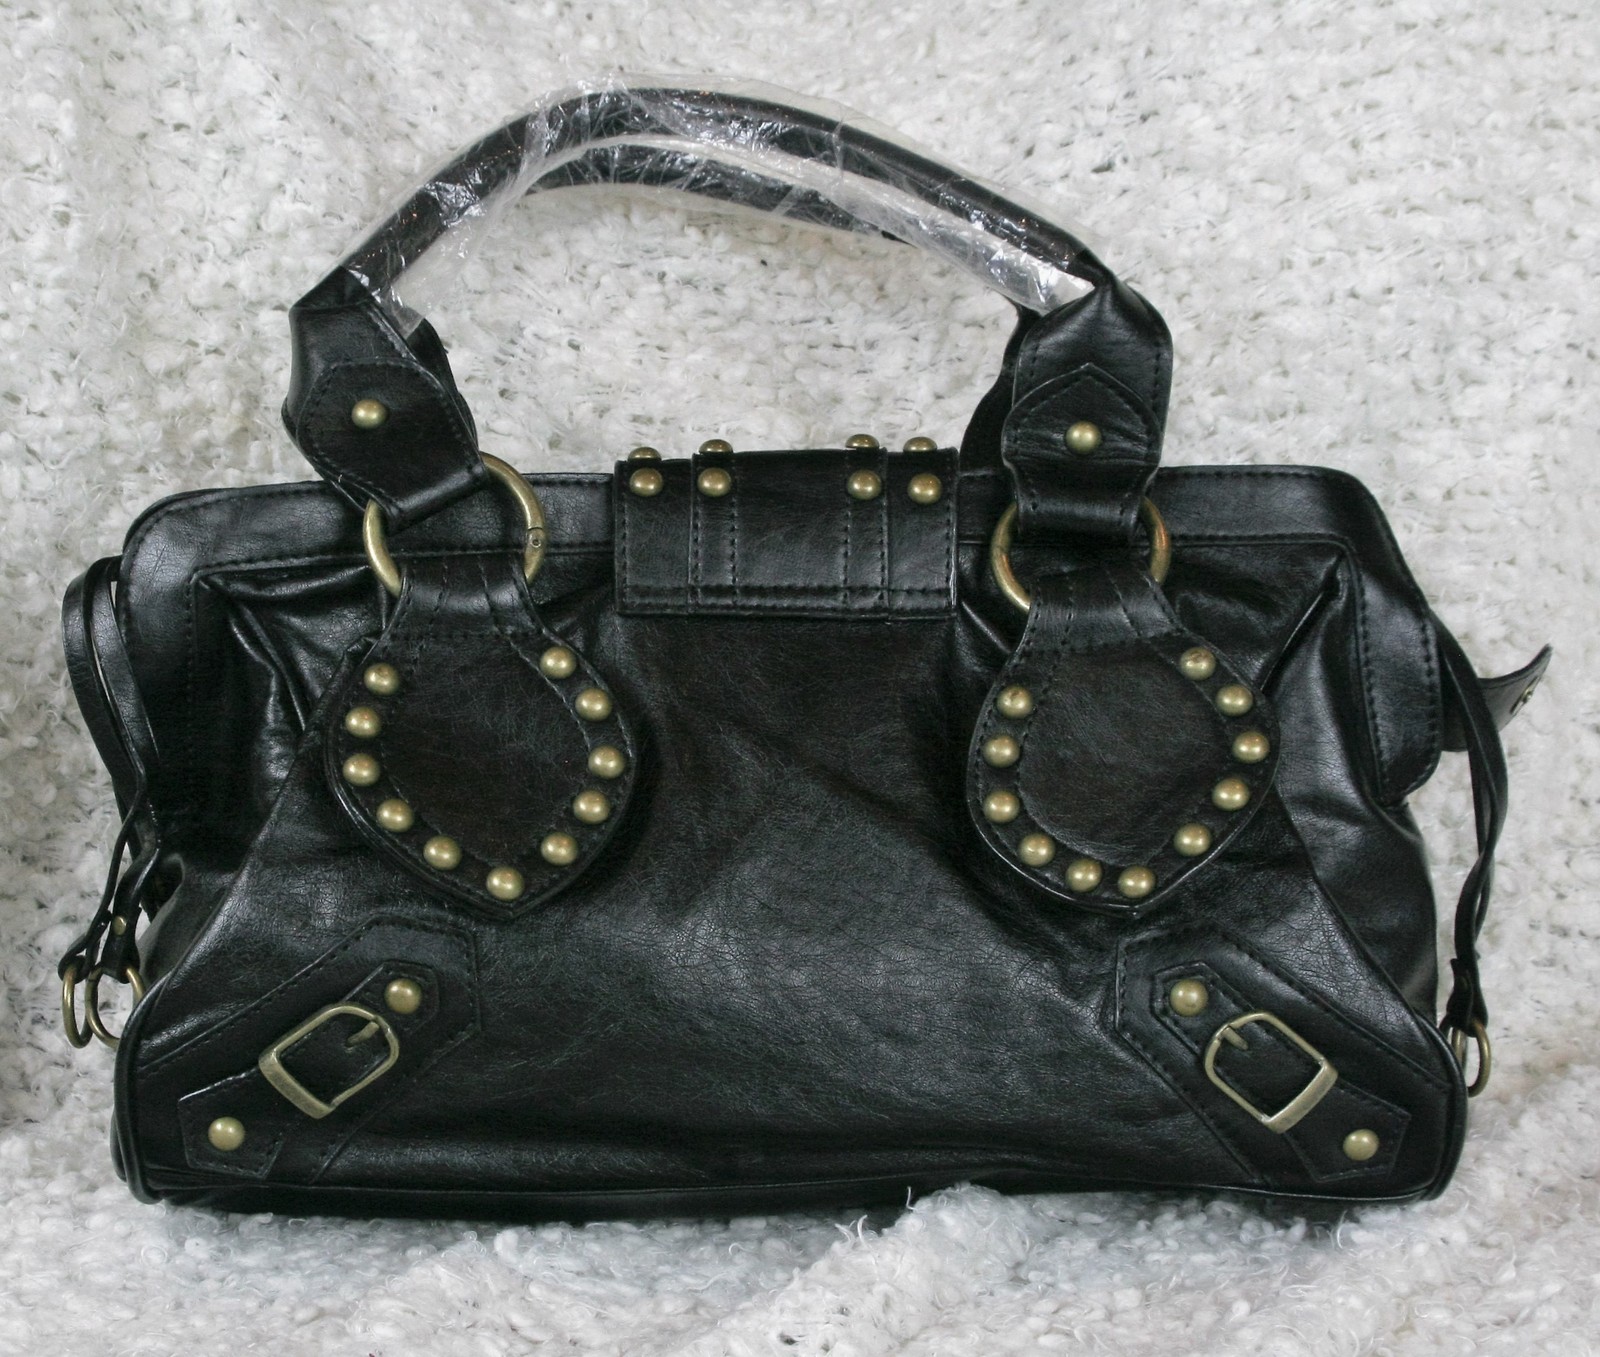 Black Gold Studded Undbranded Faux Leather Handbag Shoulder Bag New - Handbags & Purses